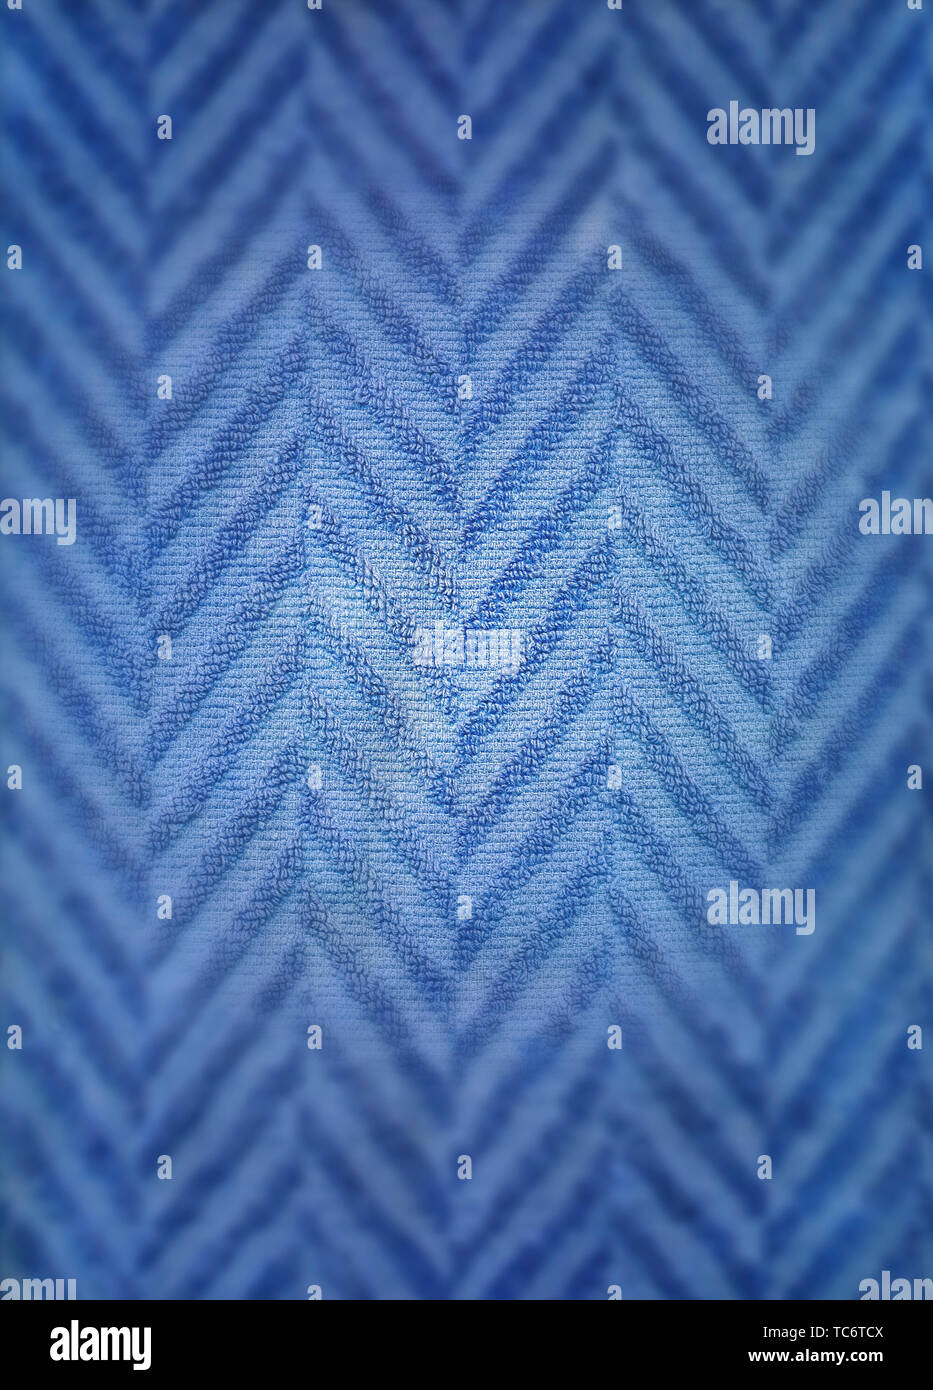 Structure of a blue towel, Struktur eines blauen Handtuchs Stock Photo